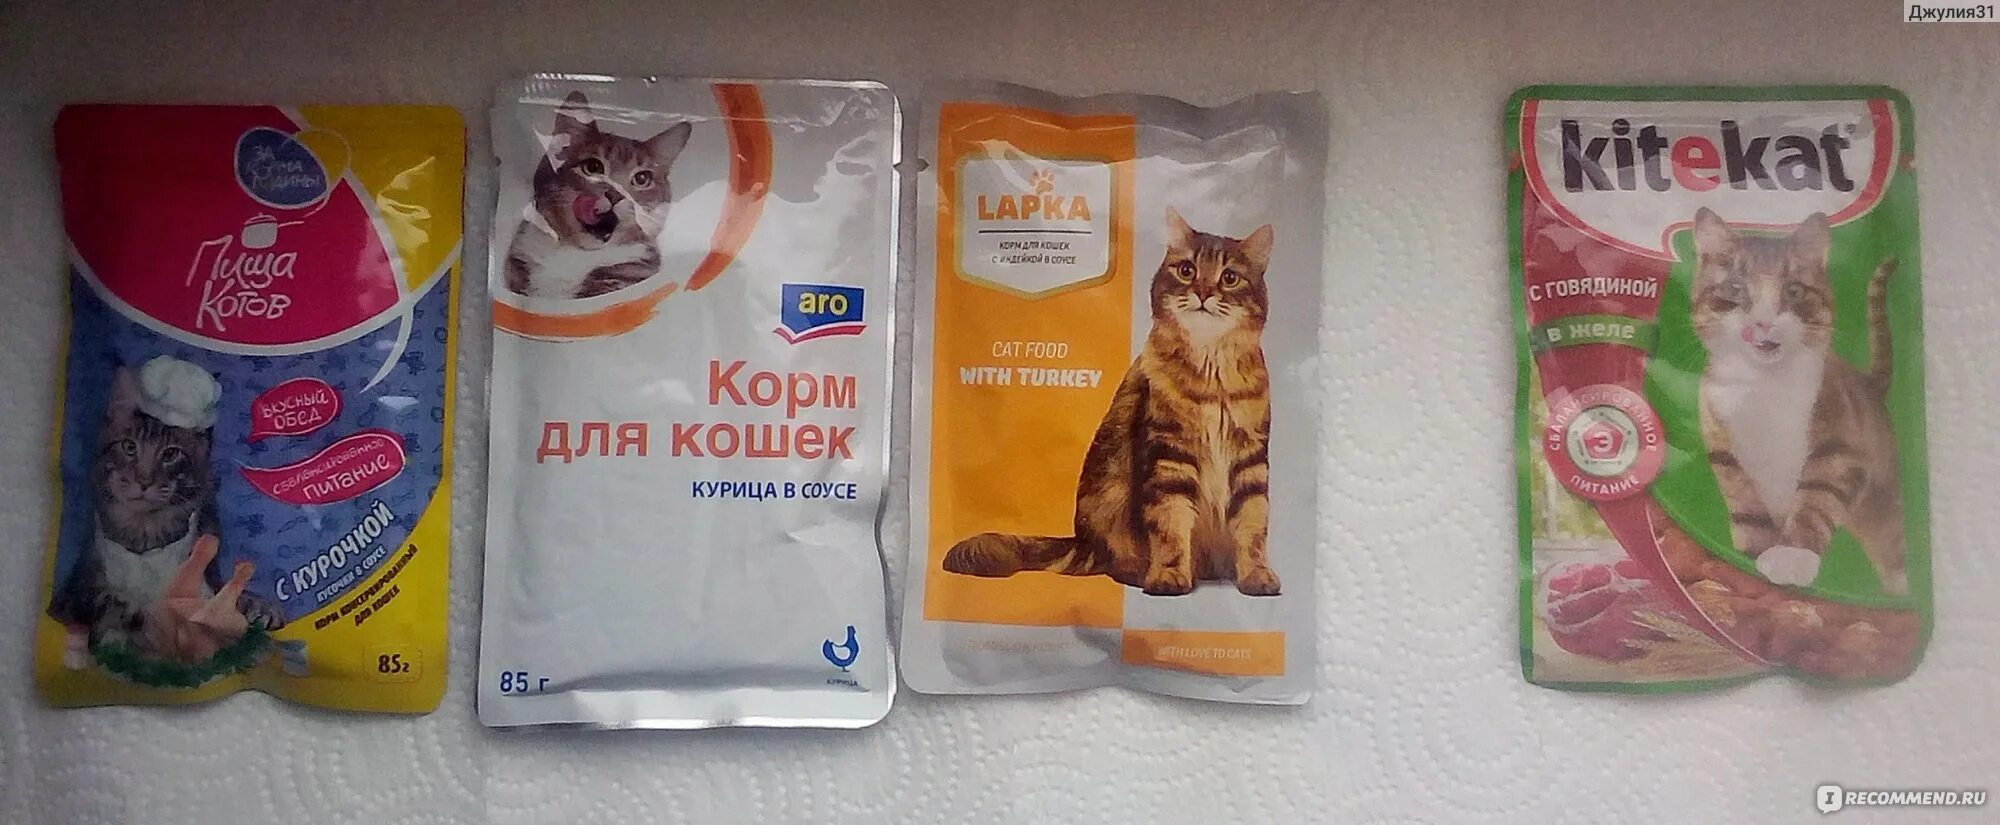 Сколько стоит пакетик корма для кошек. Дешевый кошачий корм в пакетиках. Самый дешевый кошачий корм в пакетиках. Корм в пакетиках премиум для котят. Корм ы пакетиках дл кошек.